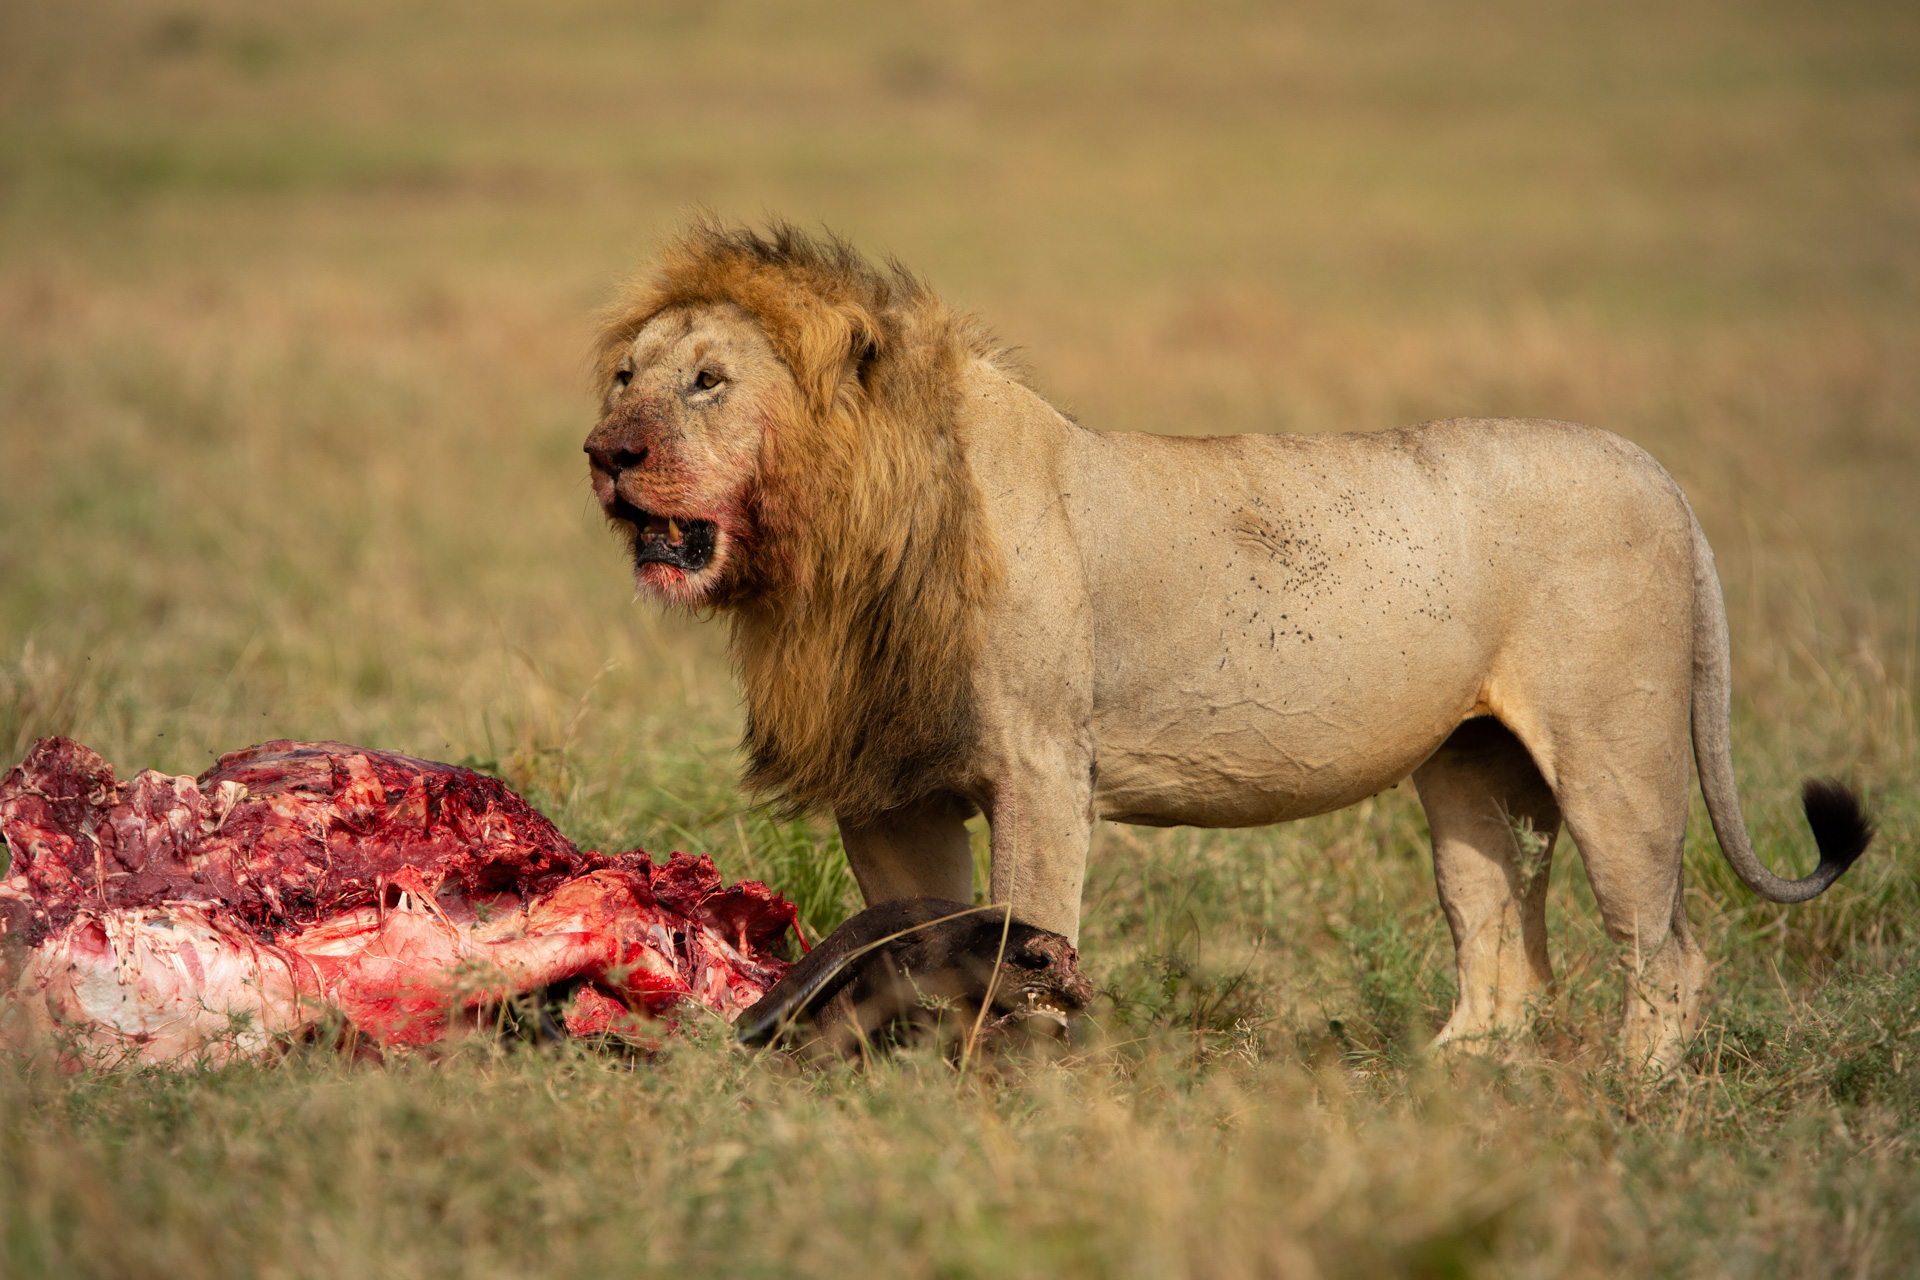 Lion feeding on buffalo